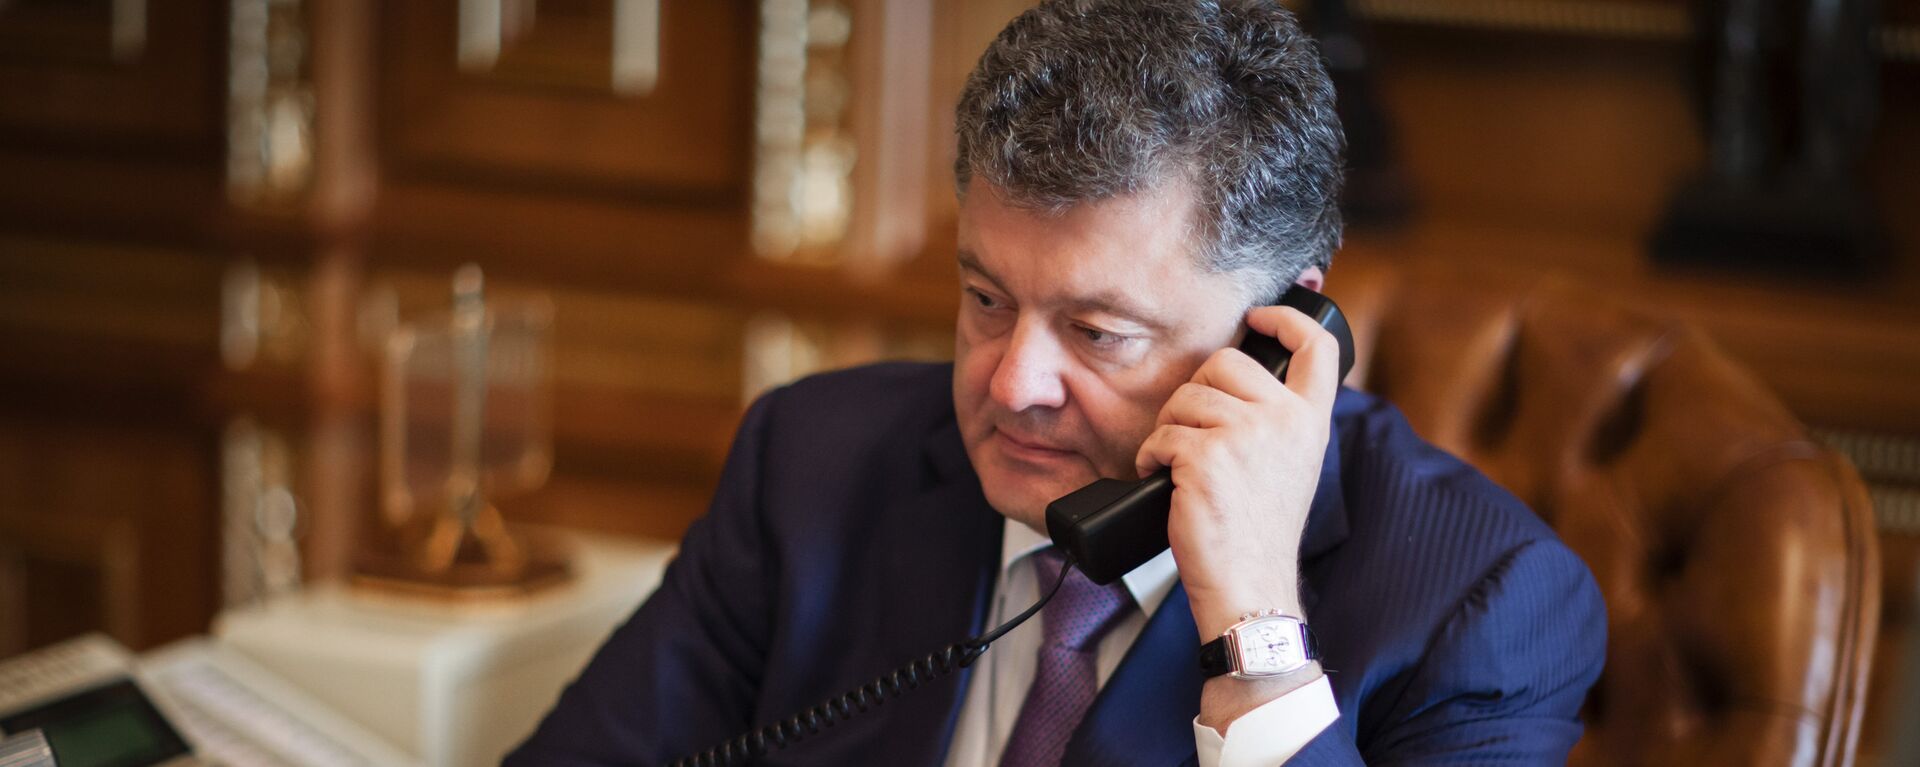 Petró Poroshenko, presidente de Ucrania, hablando por teléfono - Sputnik Mundo, 1920, 20.12.2021